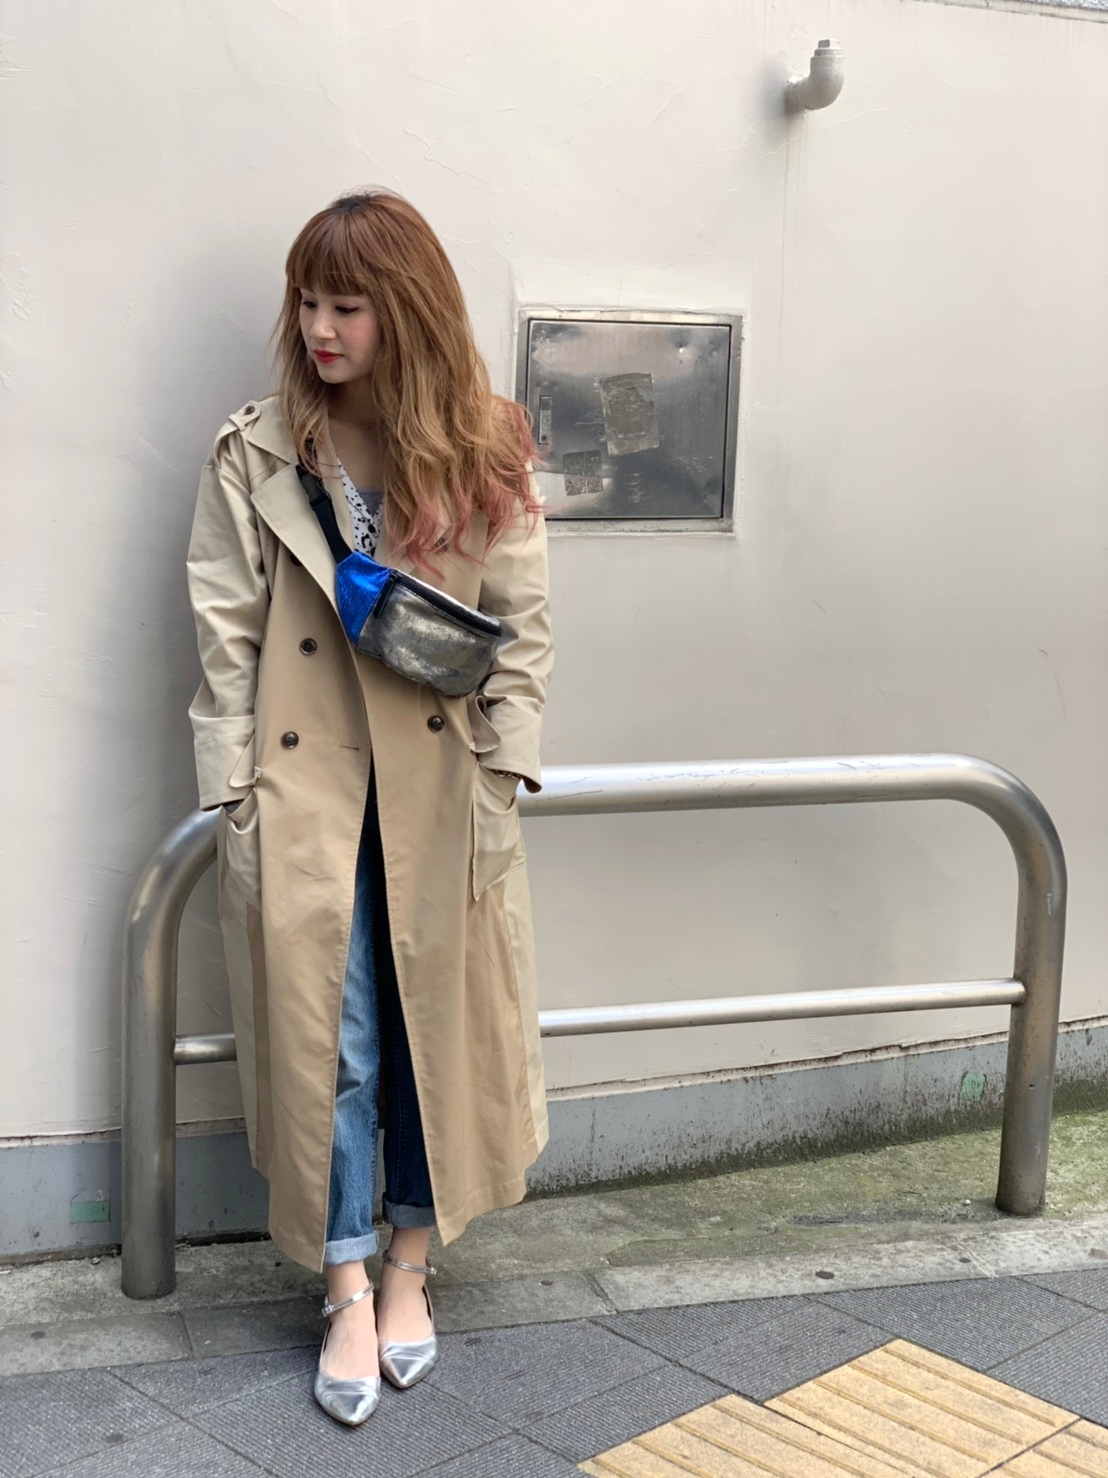 渋谷ヒカリエShinQs店】La SRIC trench coat | Scrap Book [2019.03.22]